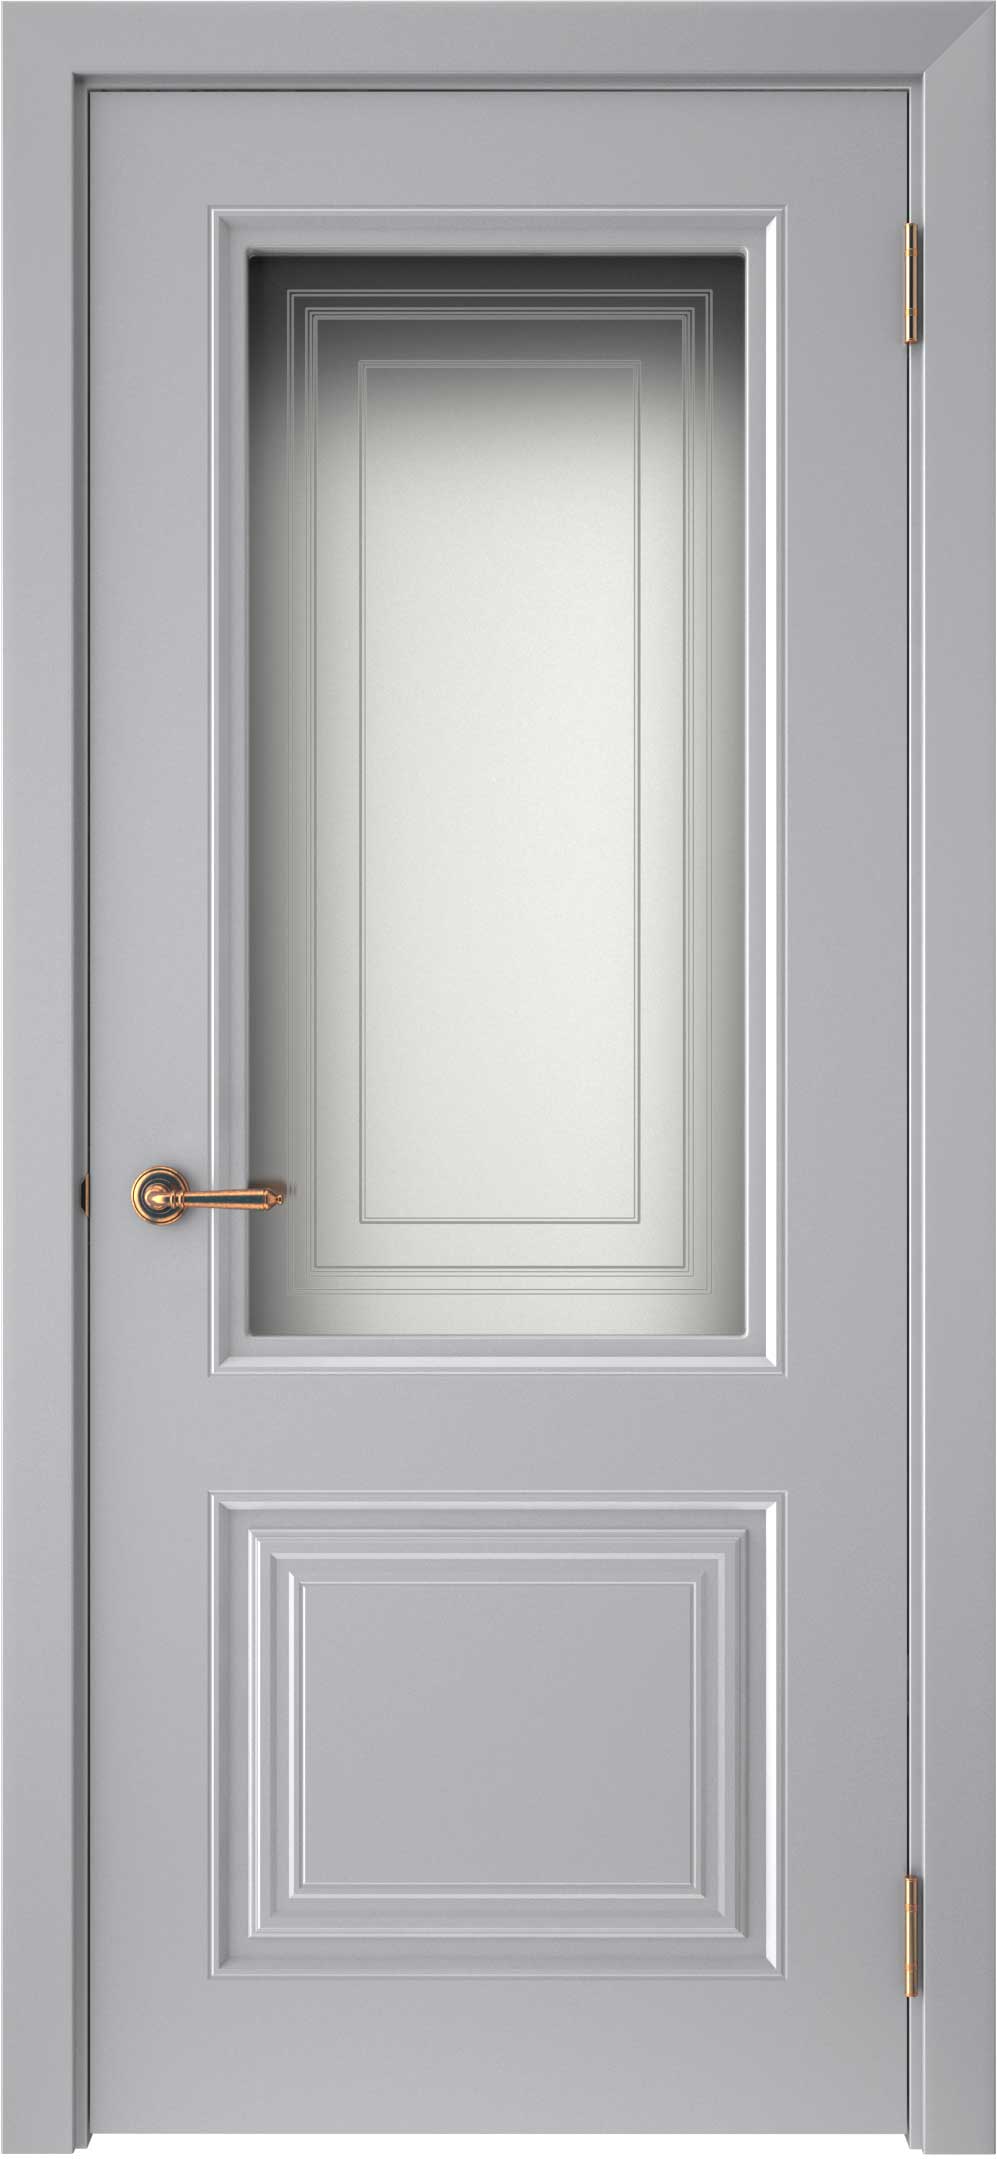 Двери крашеные (Эмаль) ТЕКОНА Смальта-42 со стеклом Серый ral 7036 размер 200 х 60 см. артикул F0000093293